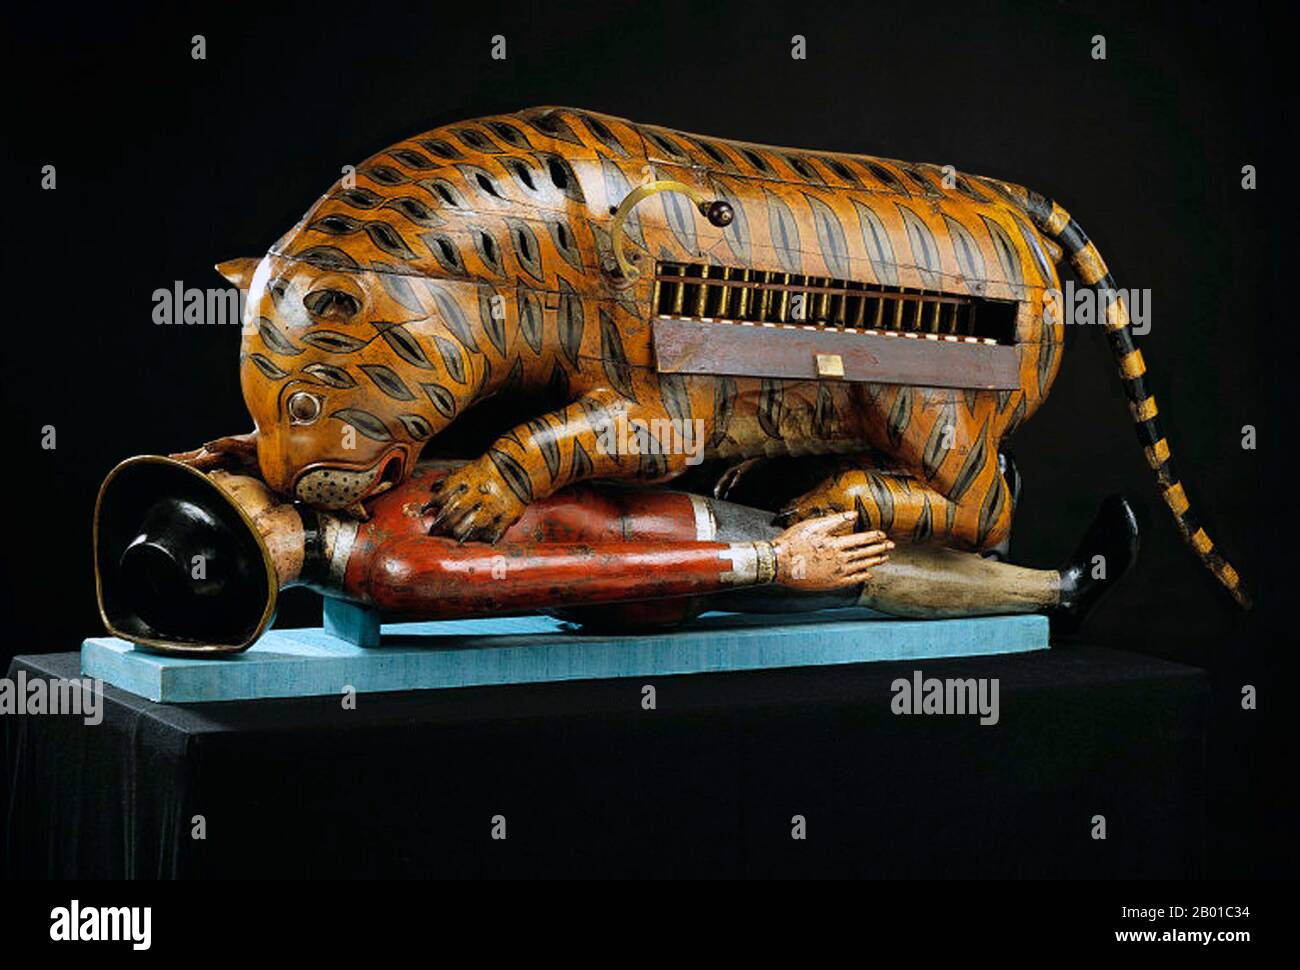 India: La tigre meccanica di Tipu Sultan che muling un soldato britannico, Mysore, c.. 1790. Foto di Victoria and Albert Museum (CC BY-SA 3,0 License). La tigre di Tipu apparteneva al sultano di Tipu, regnante di Mysore (r. 1782-1799). L'automa in legno quasi a grandezza naturale rappresenta una tigre che mulleggia una figura prostrata nei vestiti europei. C'è un organo all'interno del corpo della tigre. Quando una maniglia viene girata, l'organo gioca e il braccio della vittima si alza e cade. La tigre fu presa dagli inglesi dal palazzo di Mysore dopo l'assedio di Seringapatam nel 1799. Foto Stock